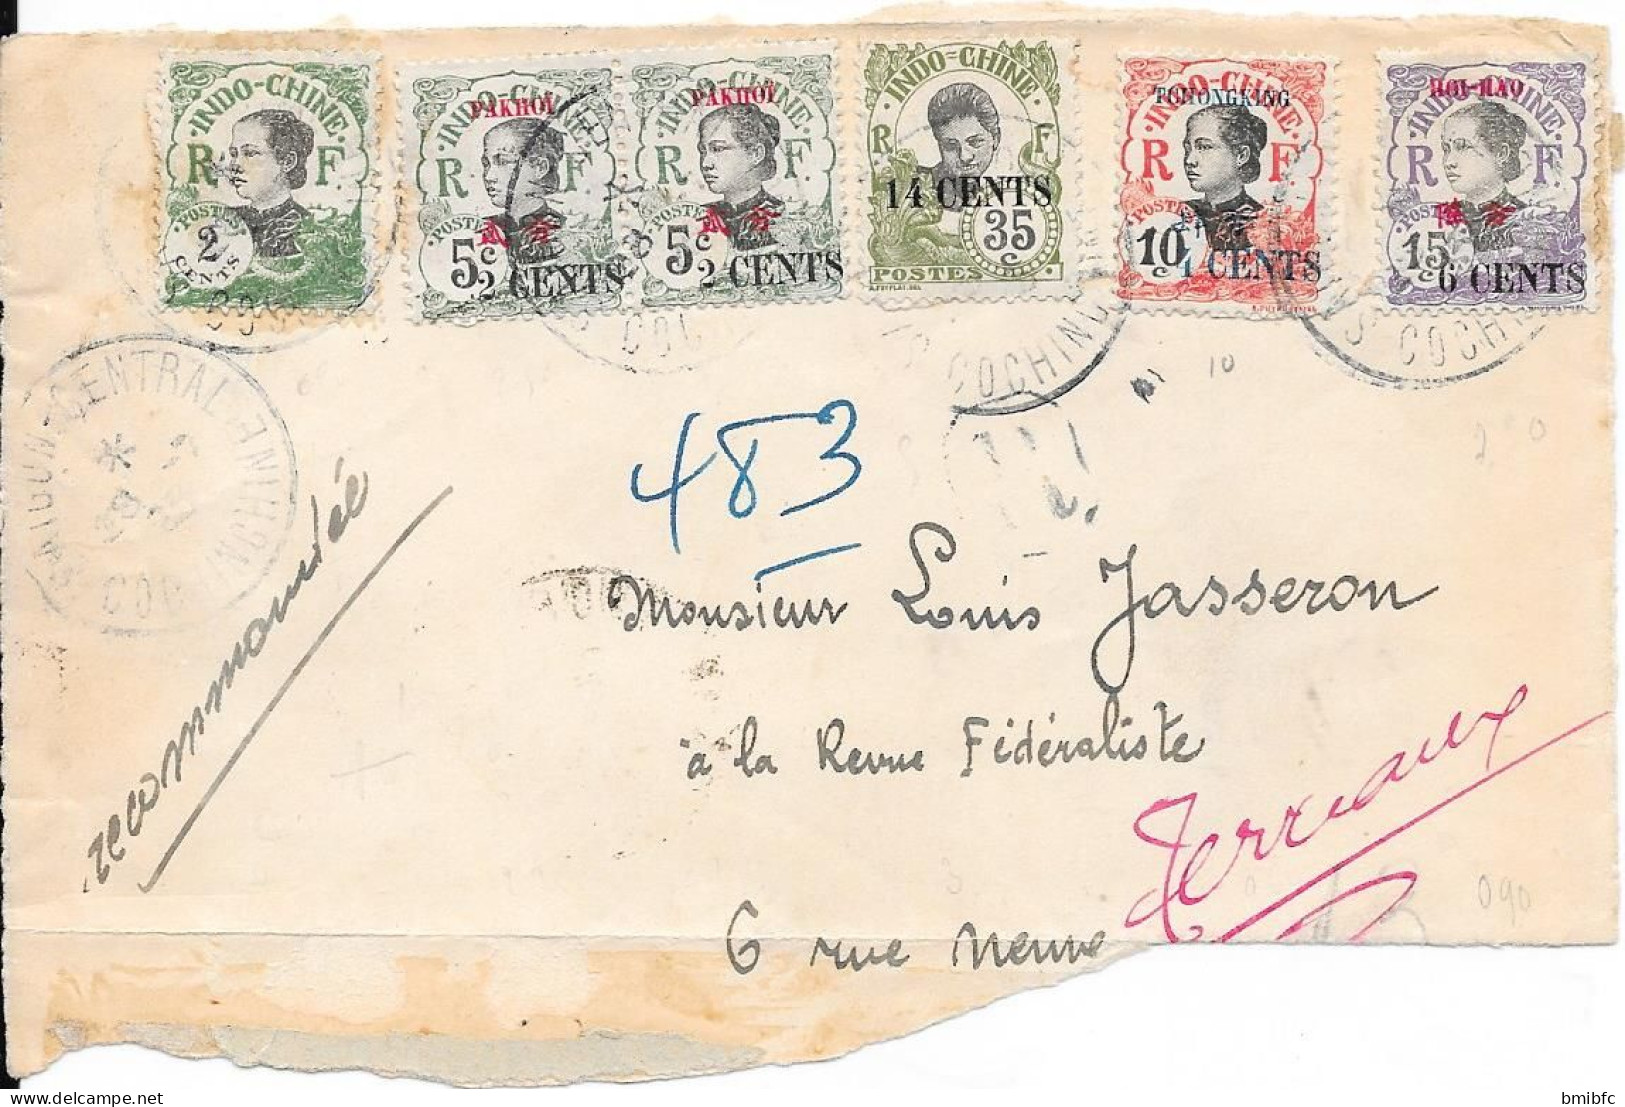 Sur Devant D'enveloppe INDO-CHINE 1923 - Covers & Documents